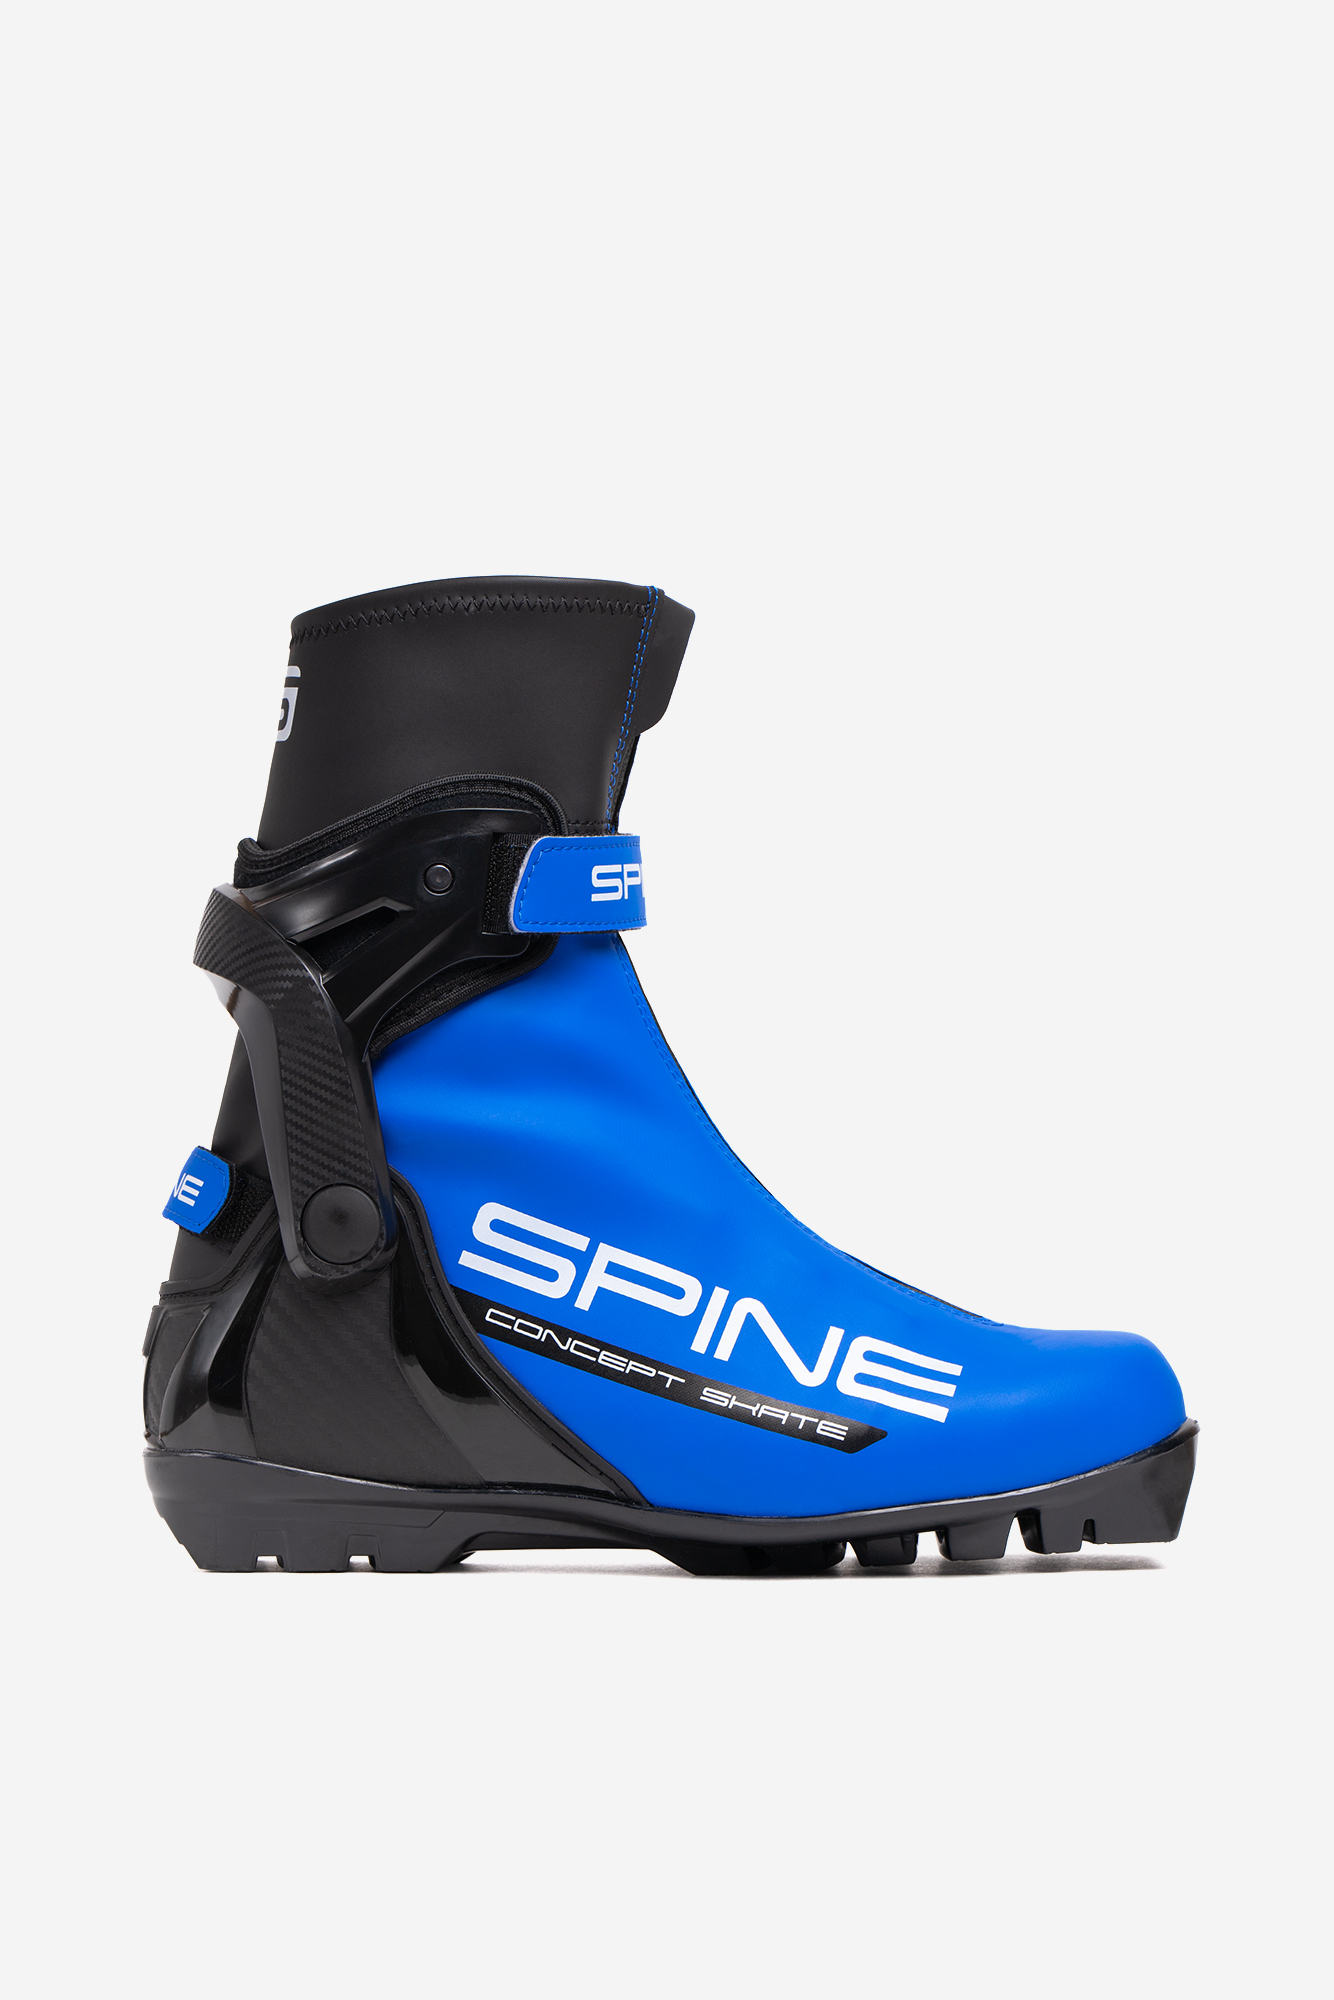 Лыжные ботинки Spine SNS Concept Skate (496/1-22) (синий),  - купить со скидкой